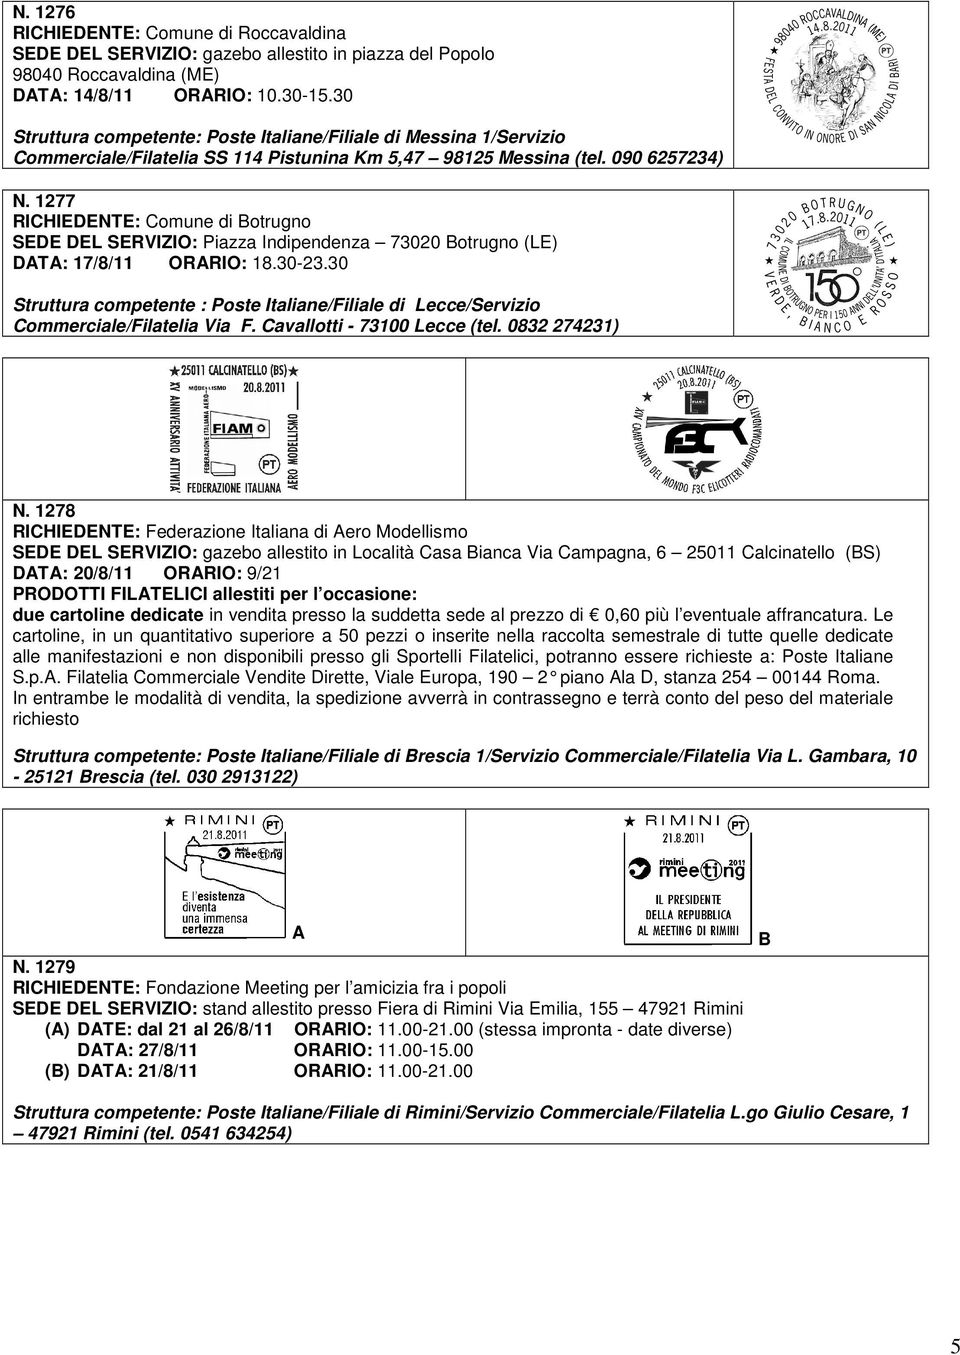 1277 RICHIEDENTE: Comune di Botrugno SEDE DEL SERVIZIO: Piazza Indipendenza 73020 Botrugno (LE) DATA: 17/8/11 ORARIO: 18.30-23.